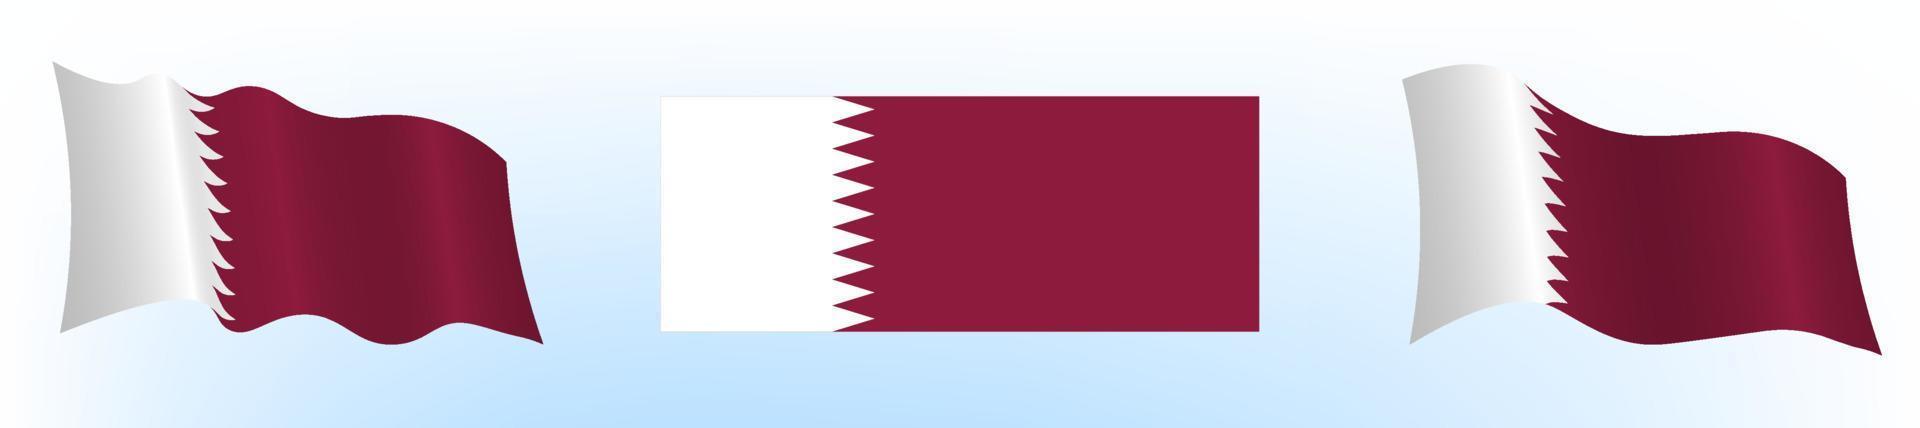 bandiera dello stato del qatar in posizione statica e in movimento, che si sviluppa nel vento, su sfondo bianco vettore